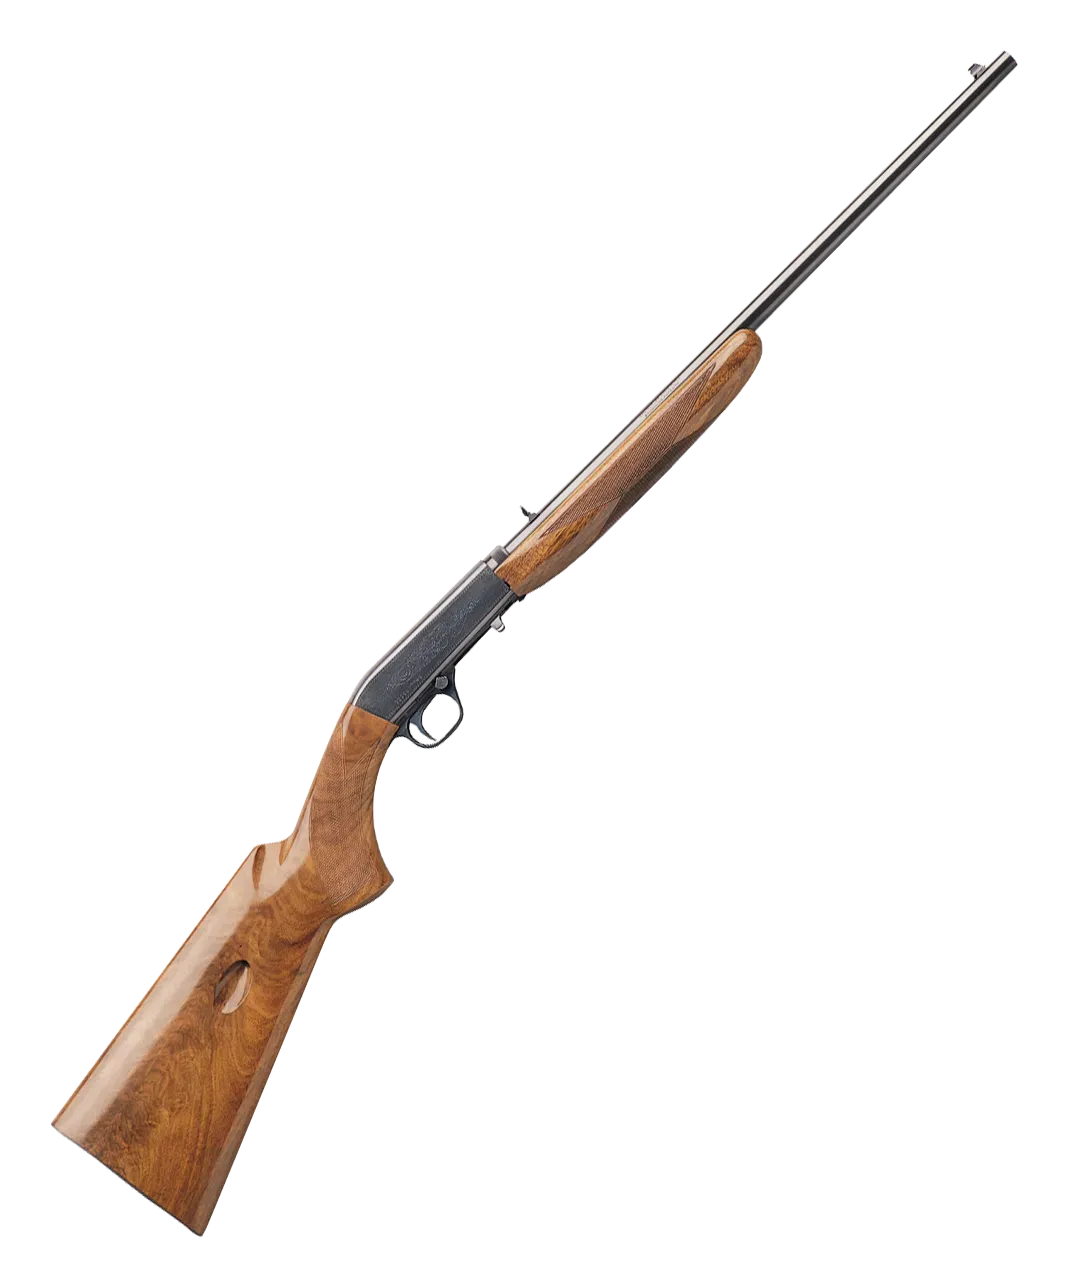 Remington 550-1 Review: A Classic .22 Rifle [2023] | Gun Made